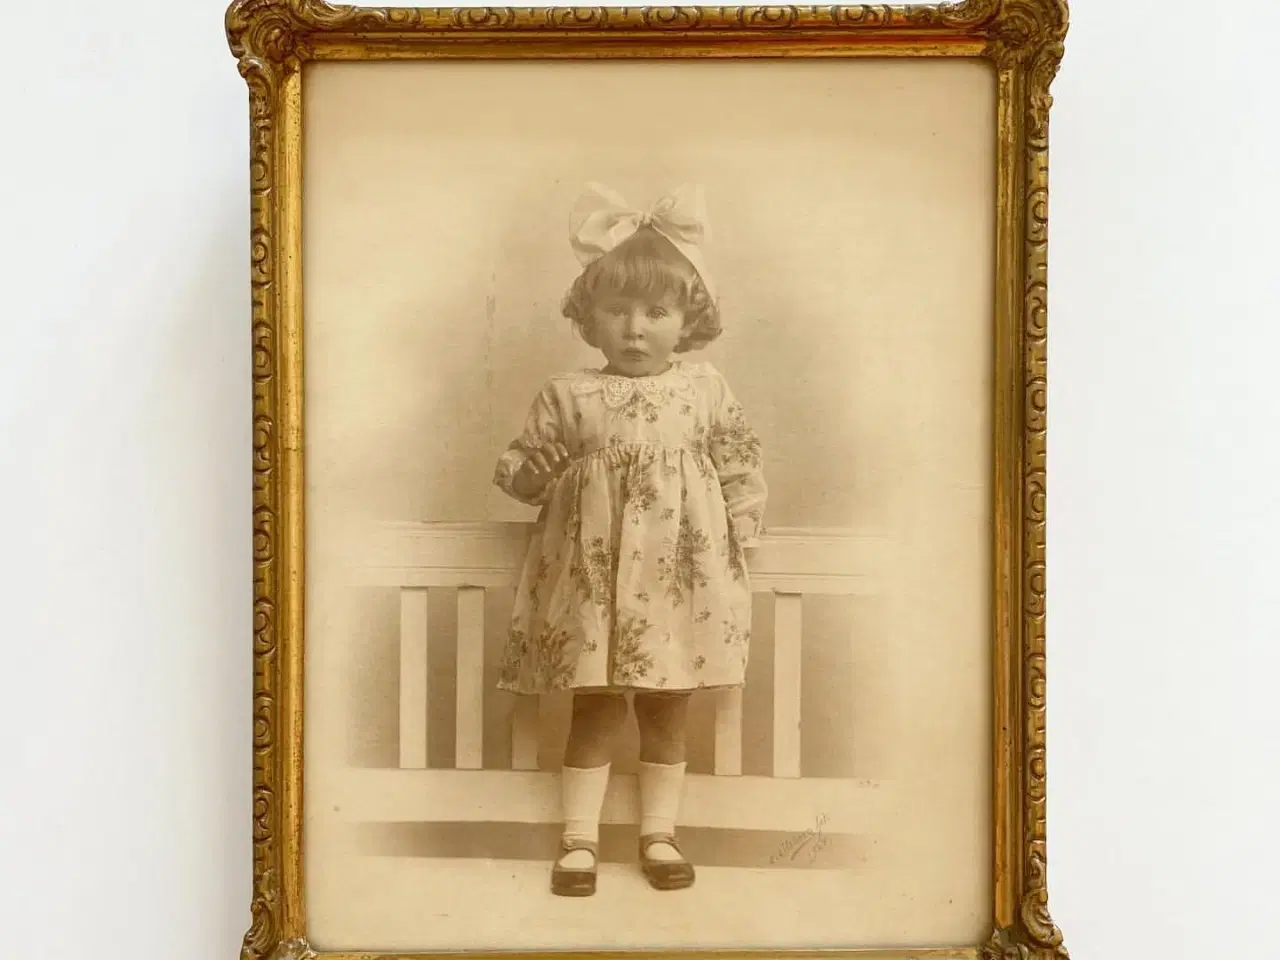 Billede 2 - Sort/hvid foto af lille pige i guldramme, dat. 1928